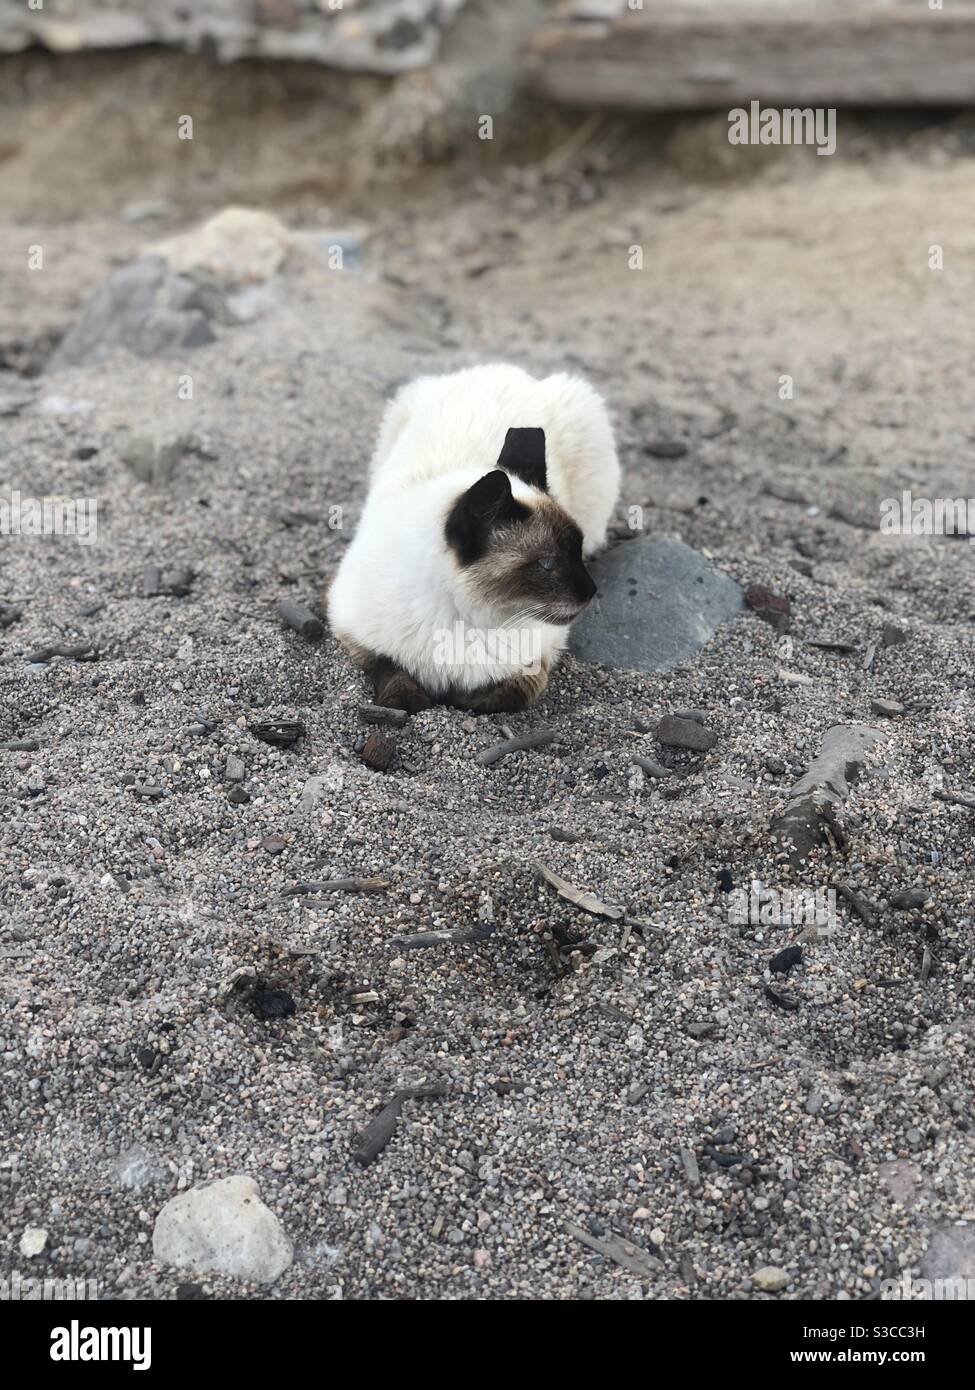 Gato mirando a la derecha en la arena Foto de stock